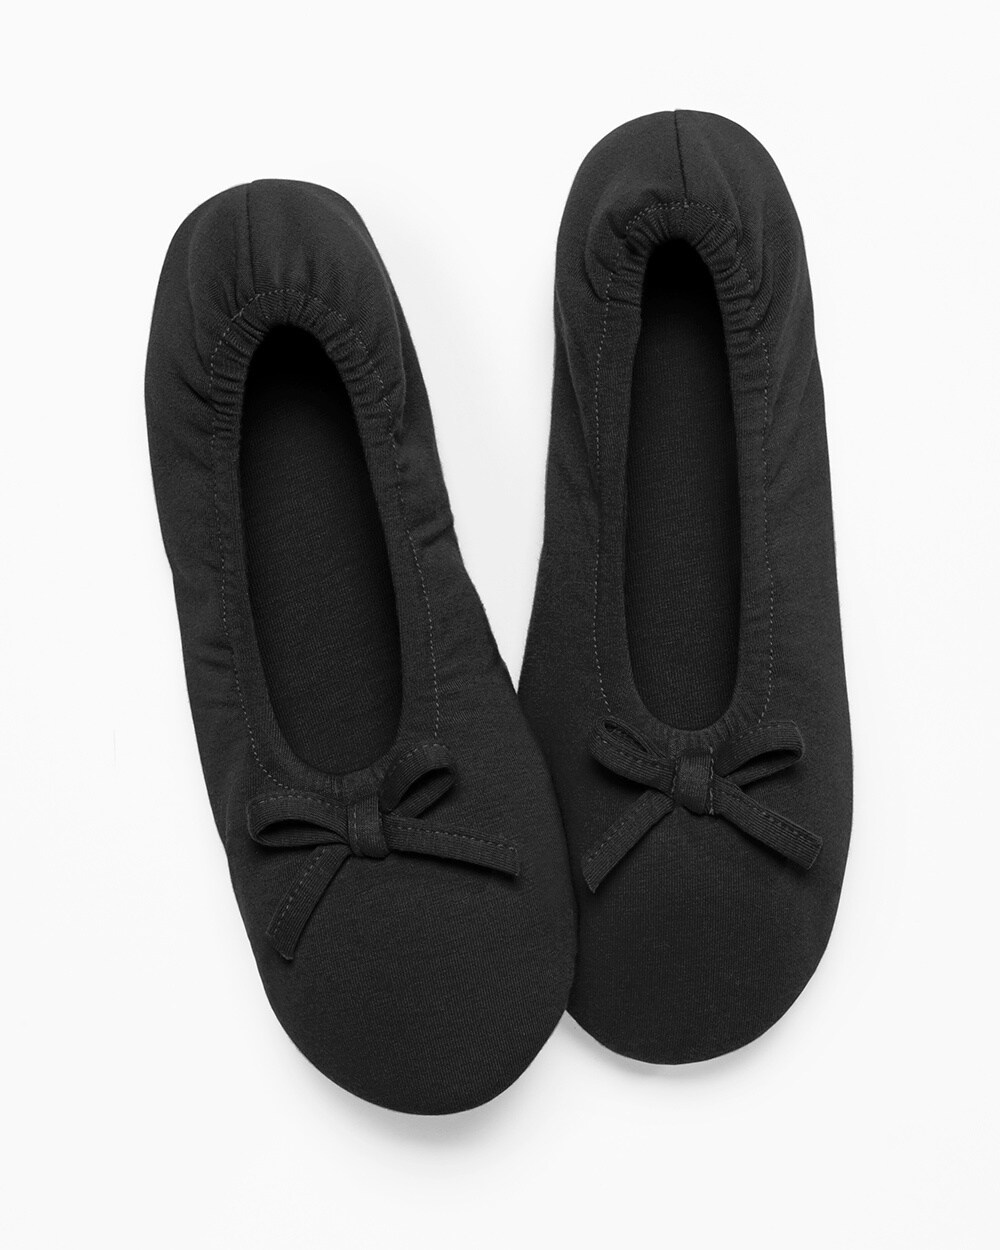 black satin ballet slippers